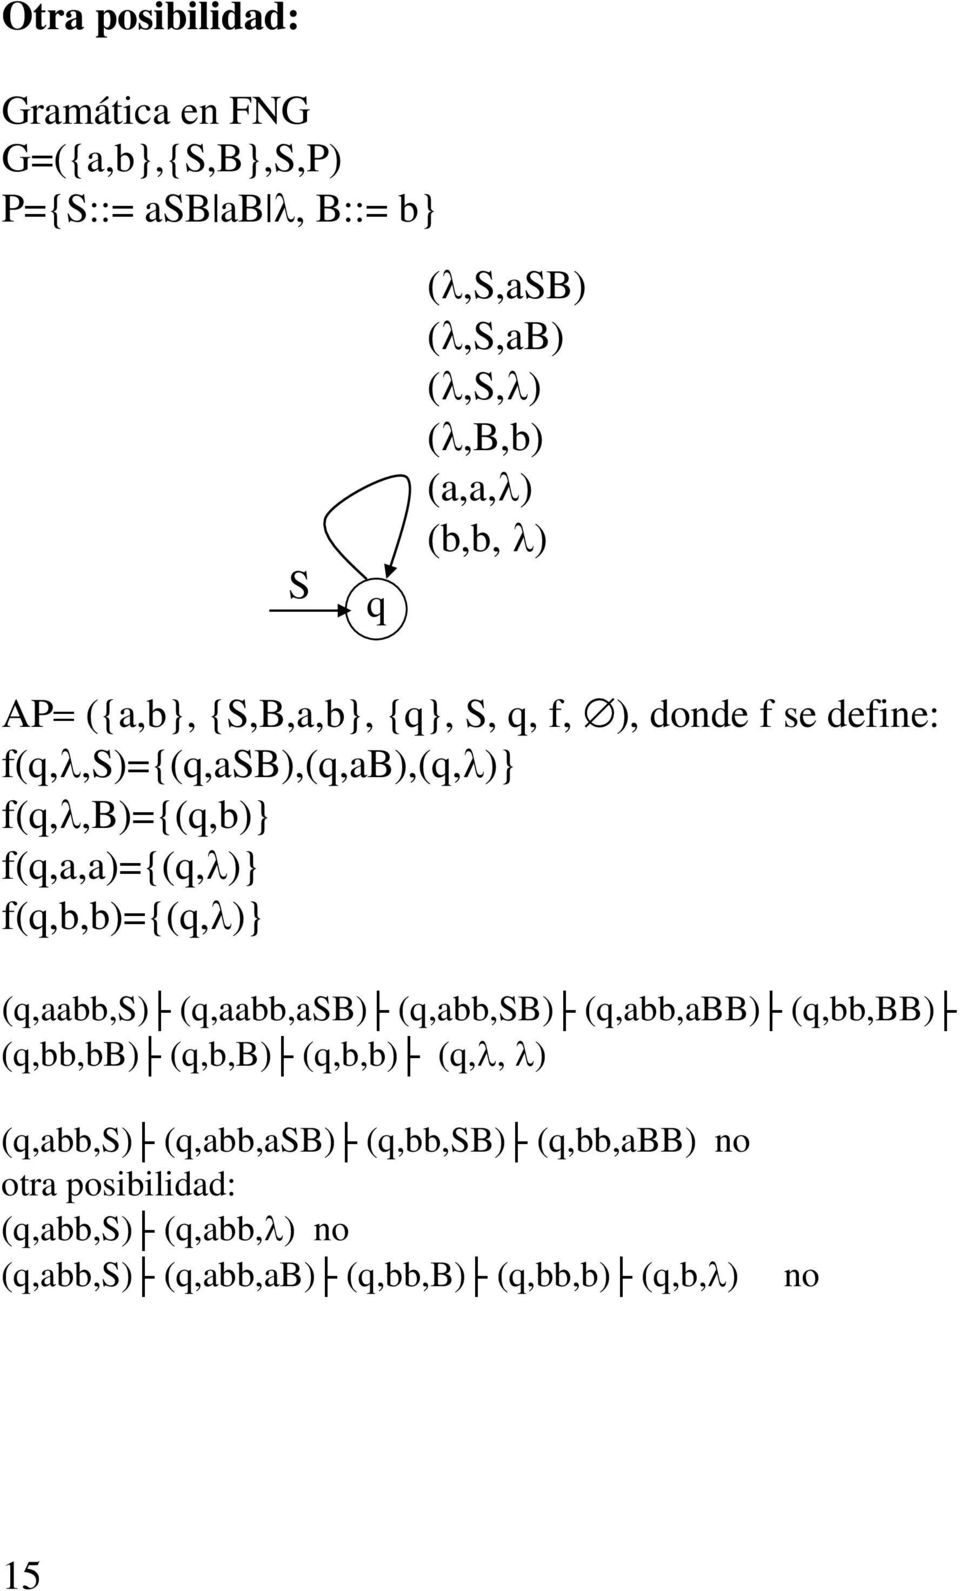 f(q,a,a)={(q,λ)} f(q,b,b)={(q,λ)} (q,aabb,s) (q,aabb,asb) (q,abb,sb) (q,abb,abb) (q,bb,bb) (q,bb,bb) (q,b,b) (q,b,b) (q,λ, λ)